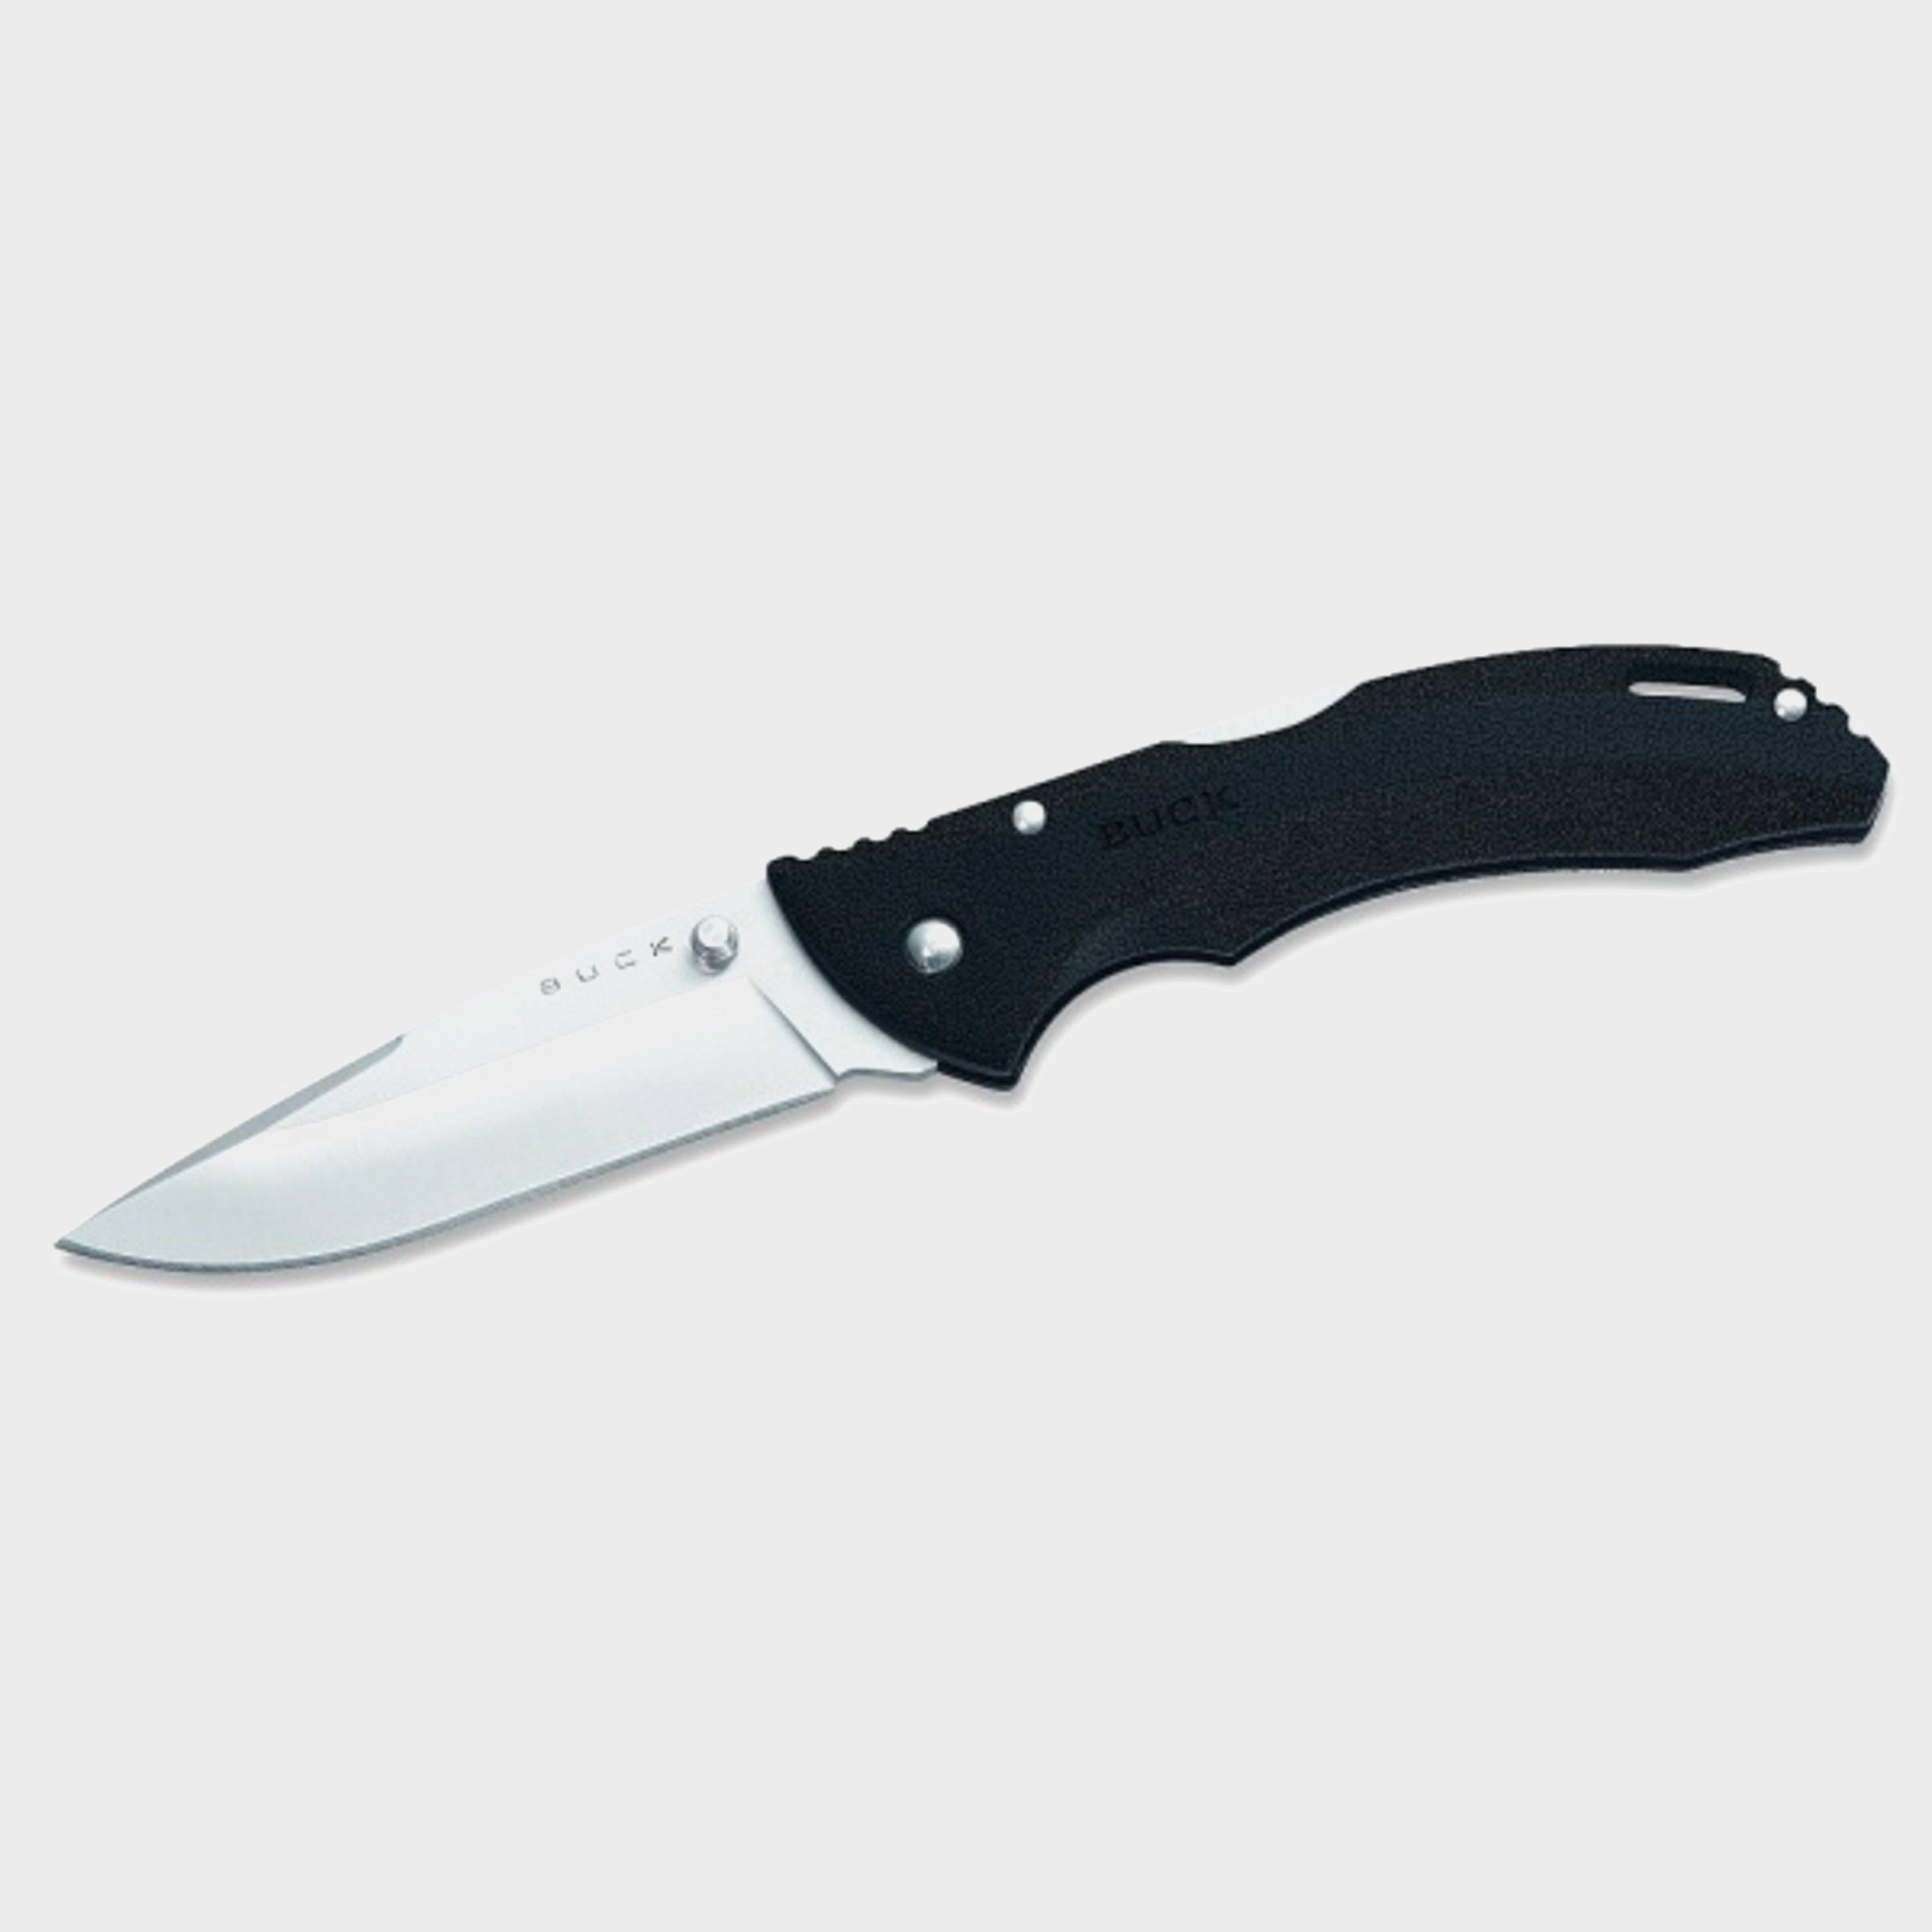 Buck 285bks Bantam BLW Straight Folding Knife - Black, 3-1/8"